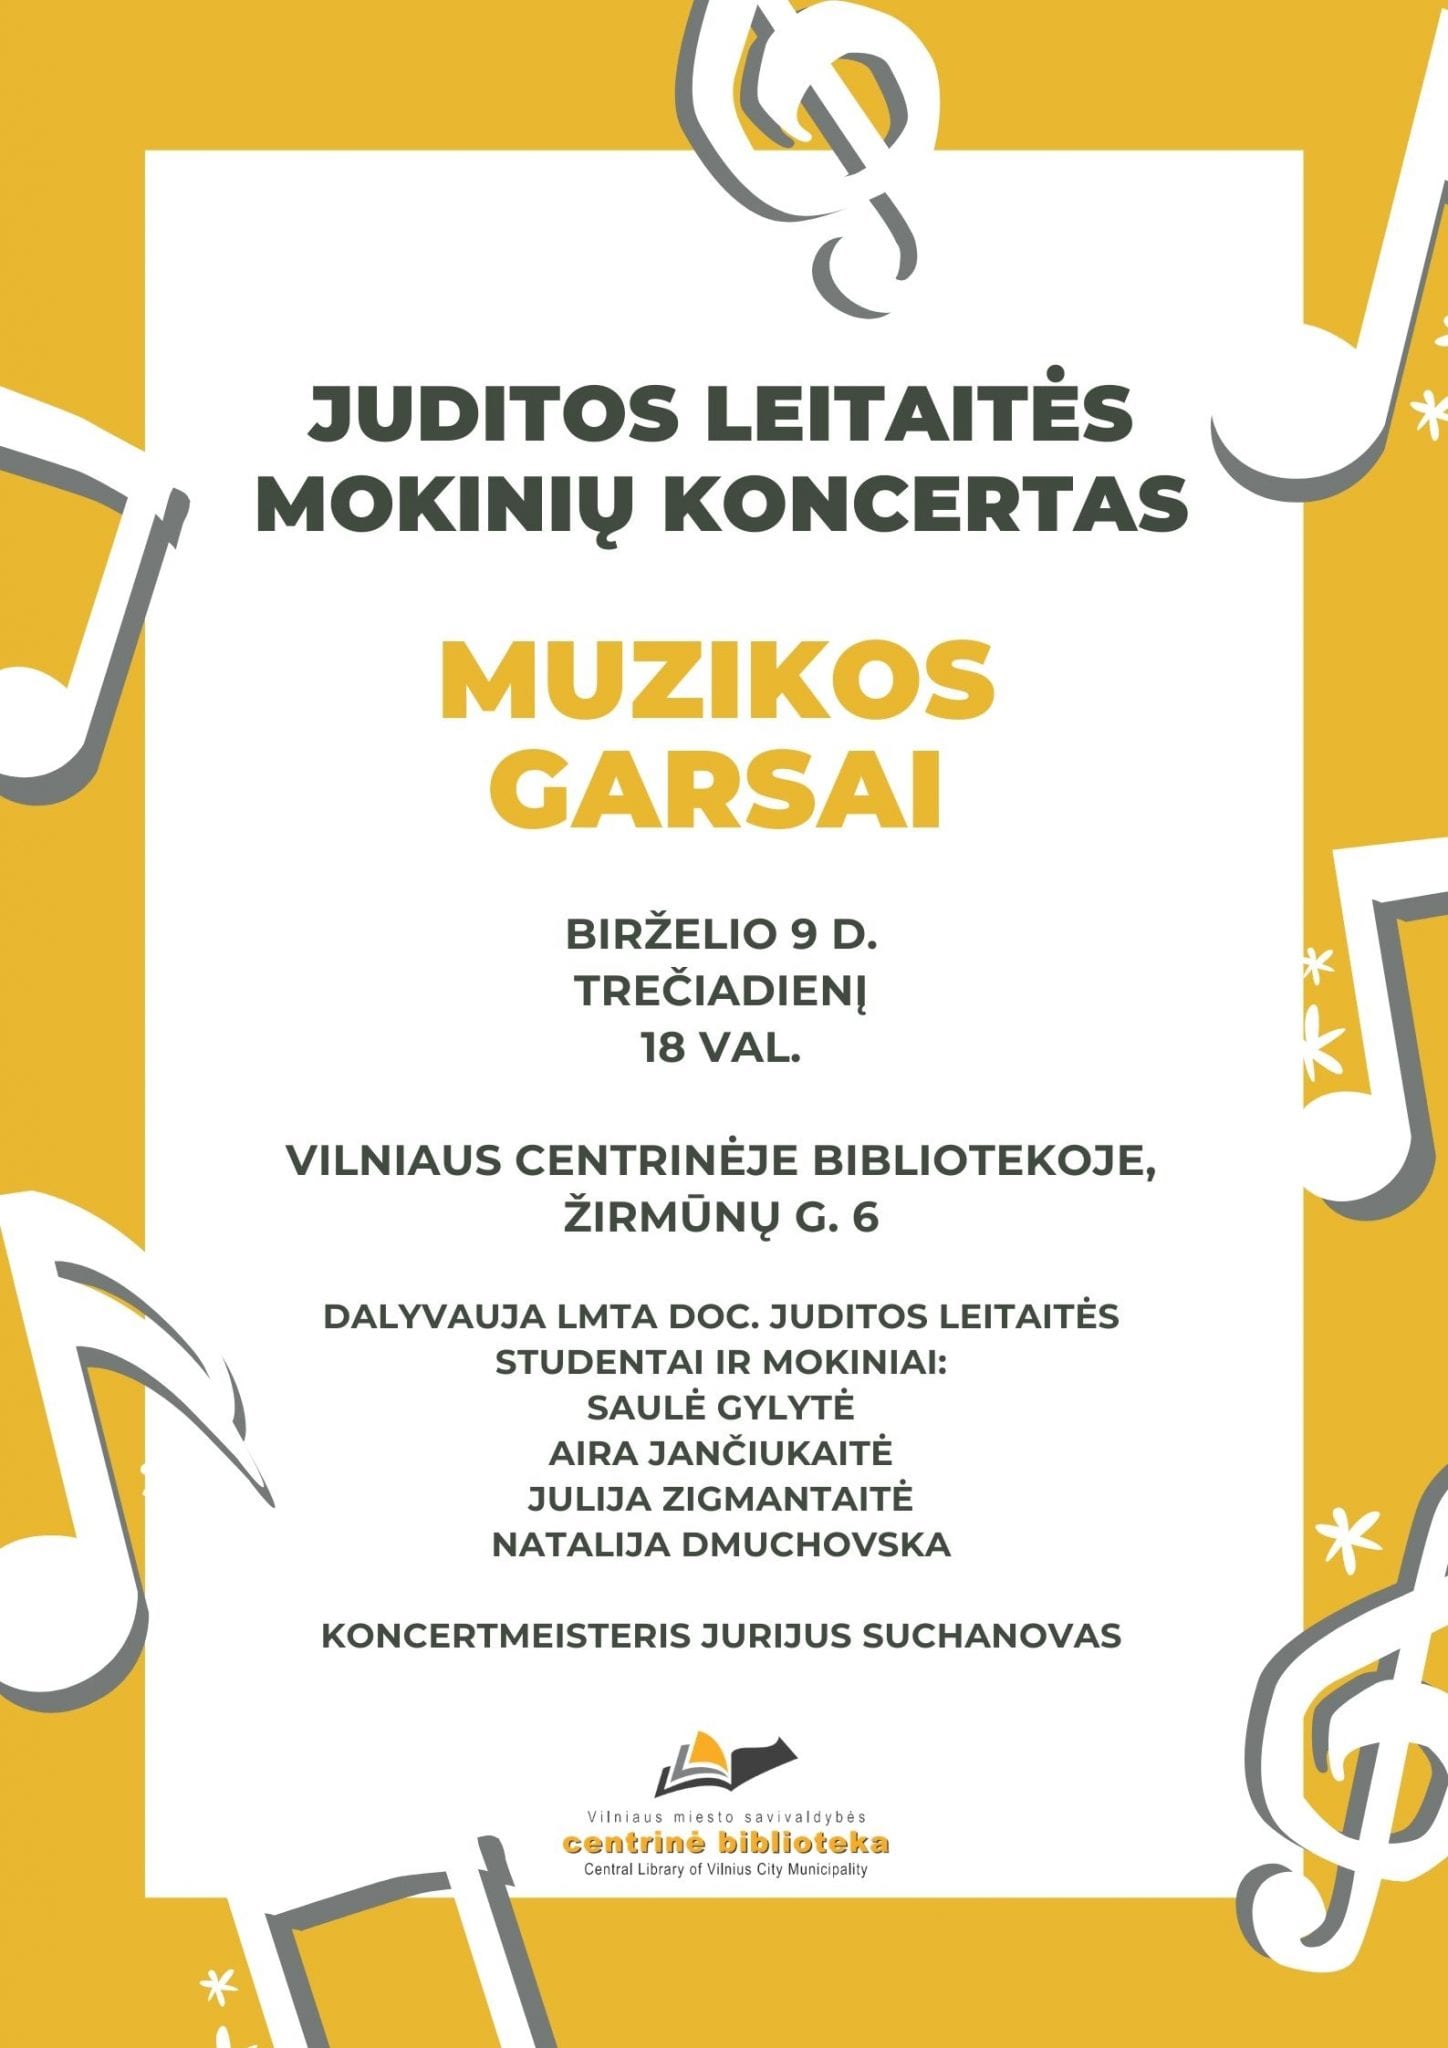 Juditos Leitaitės mokinių koncertas